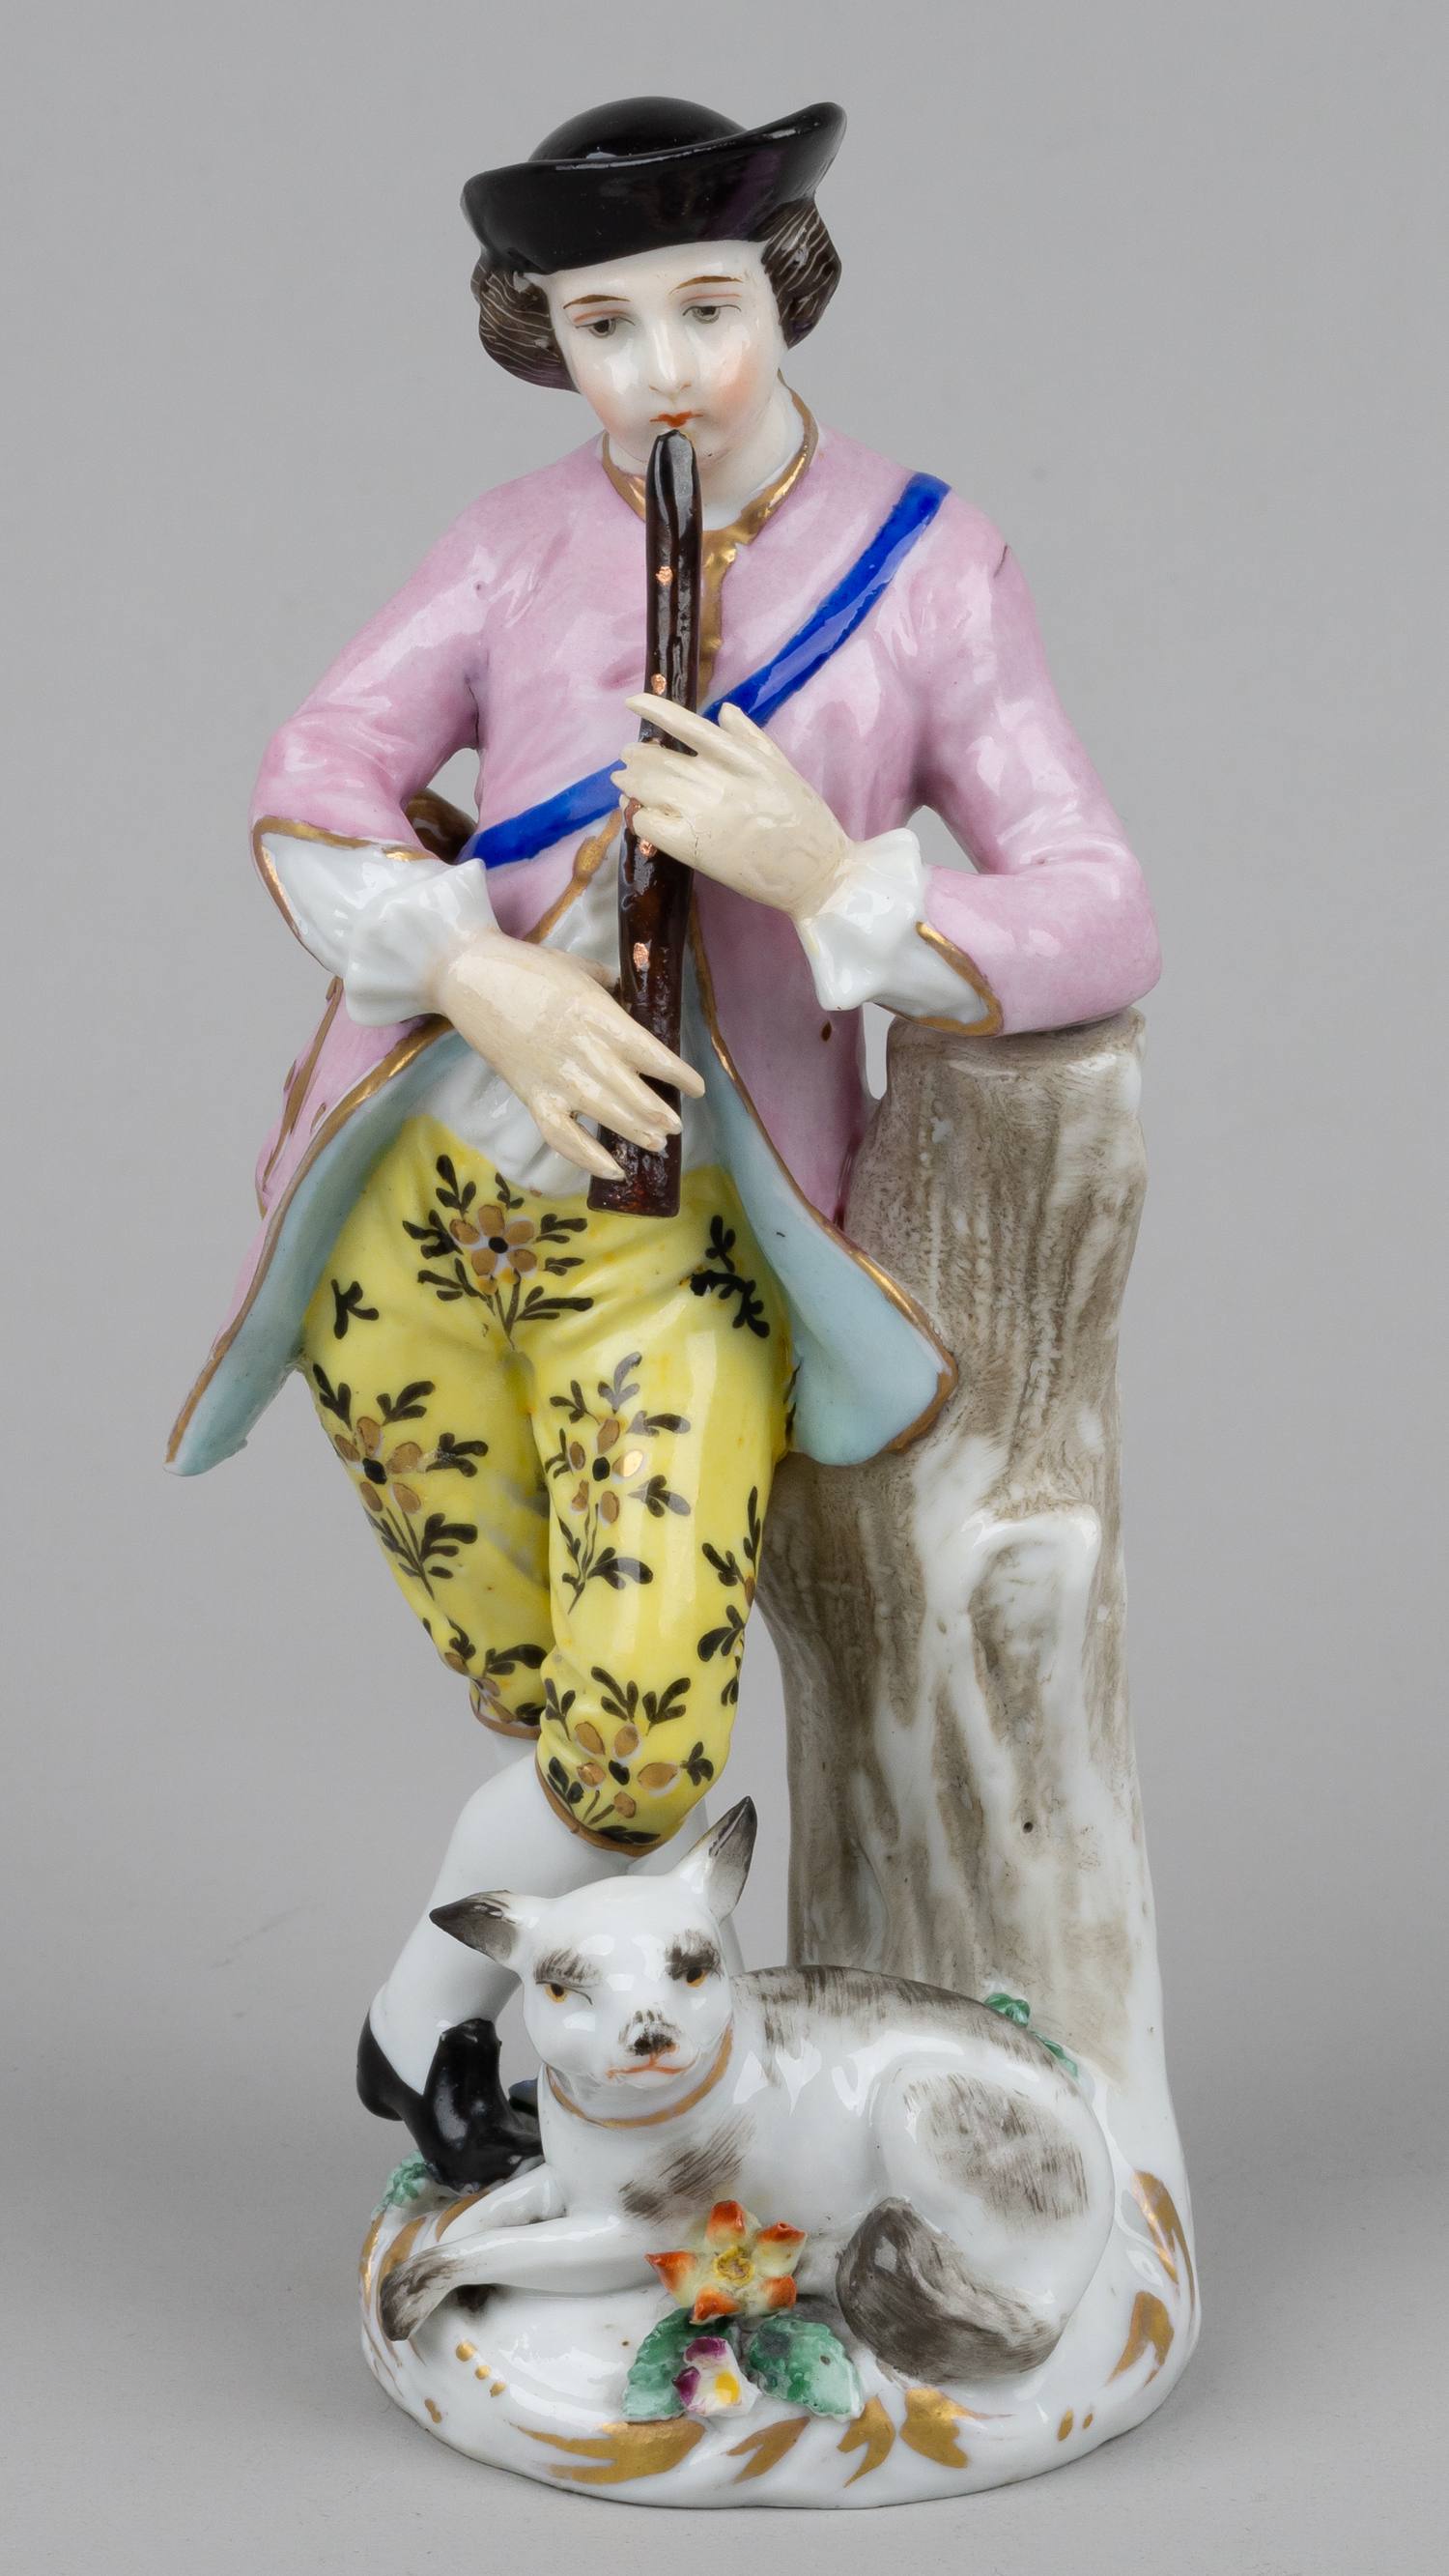 Статуэтка «Знатный юноша, играющий на флейте».<br>Англия, мануфактура Chelsea porcelain, 1750-е годы.